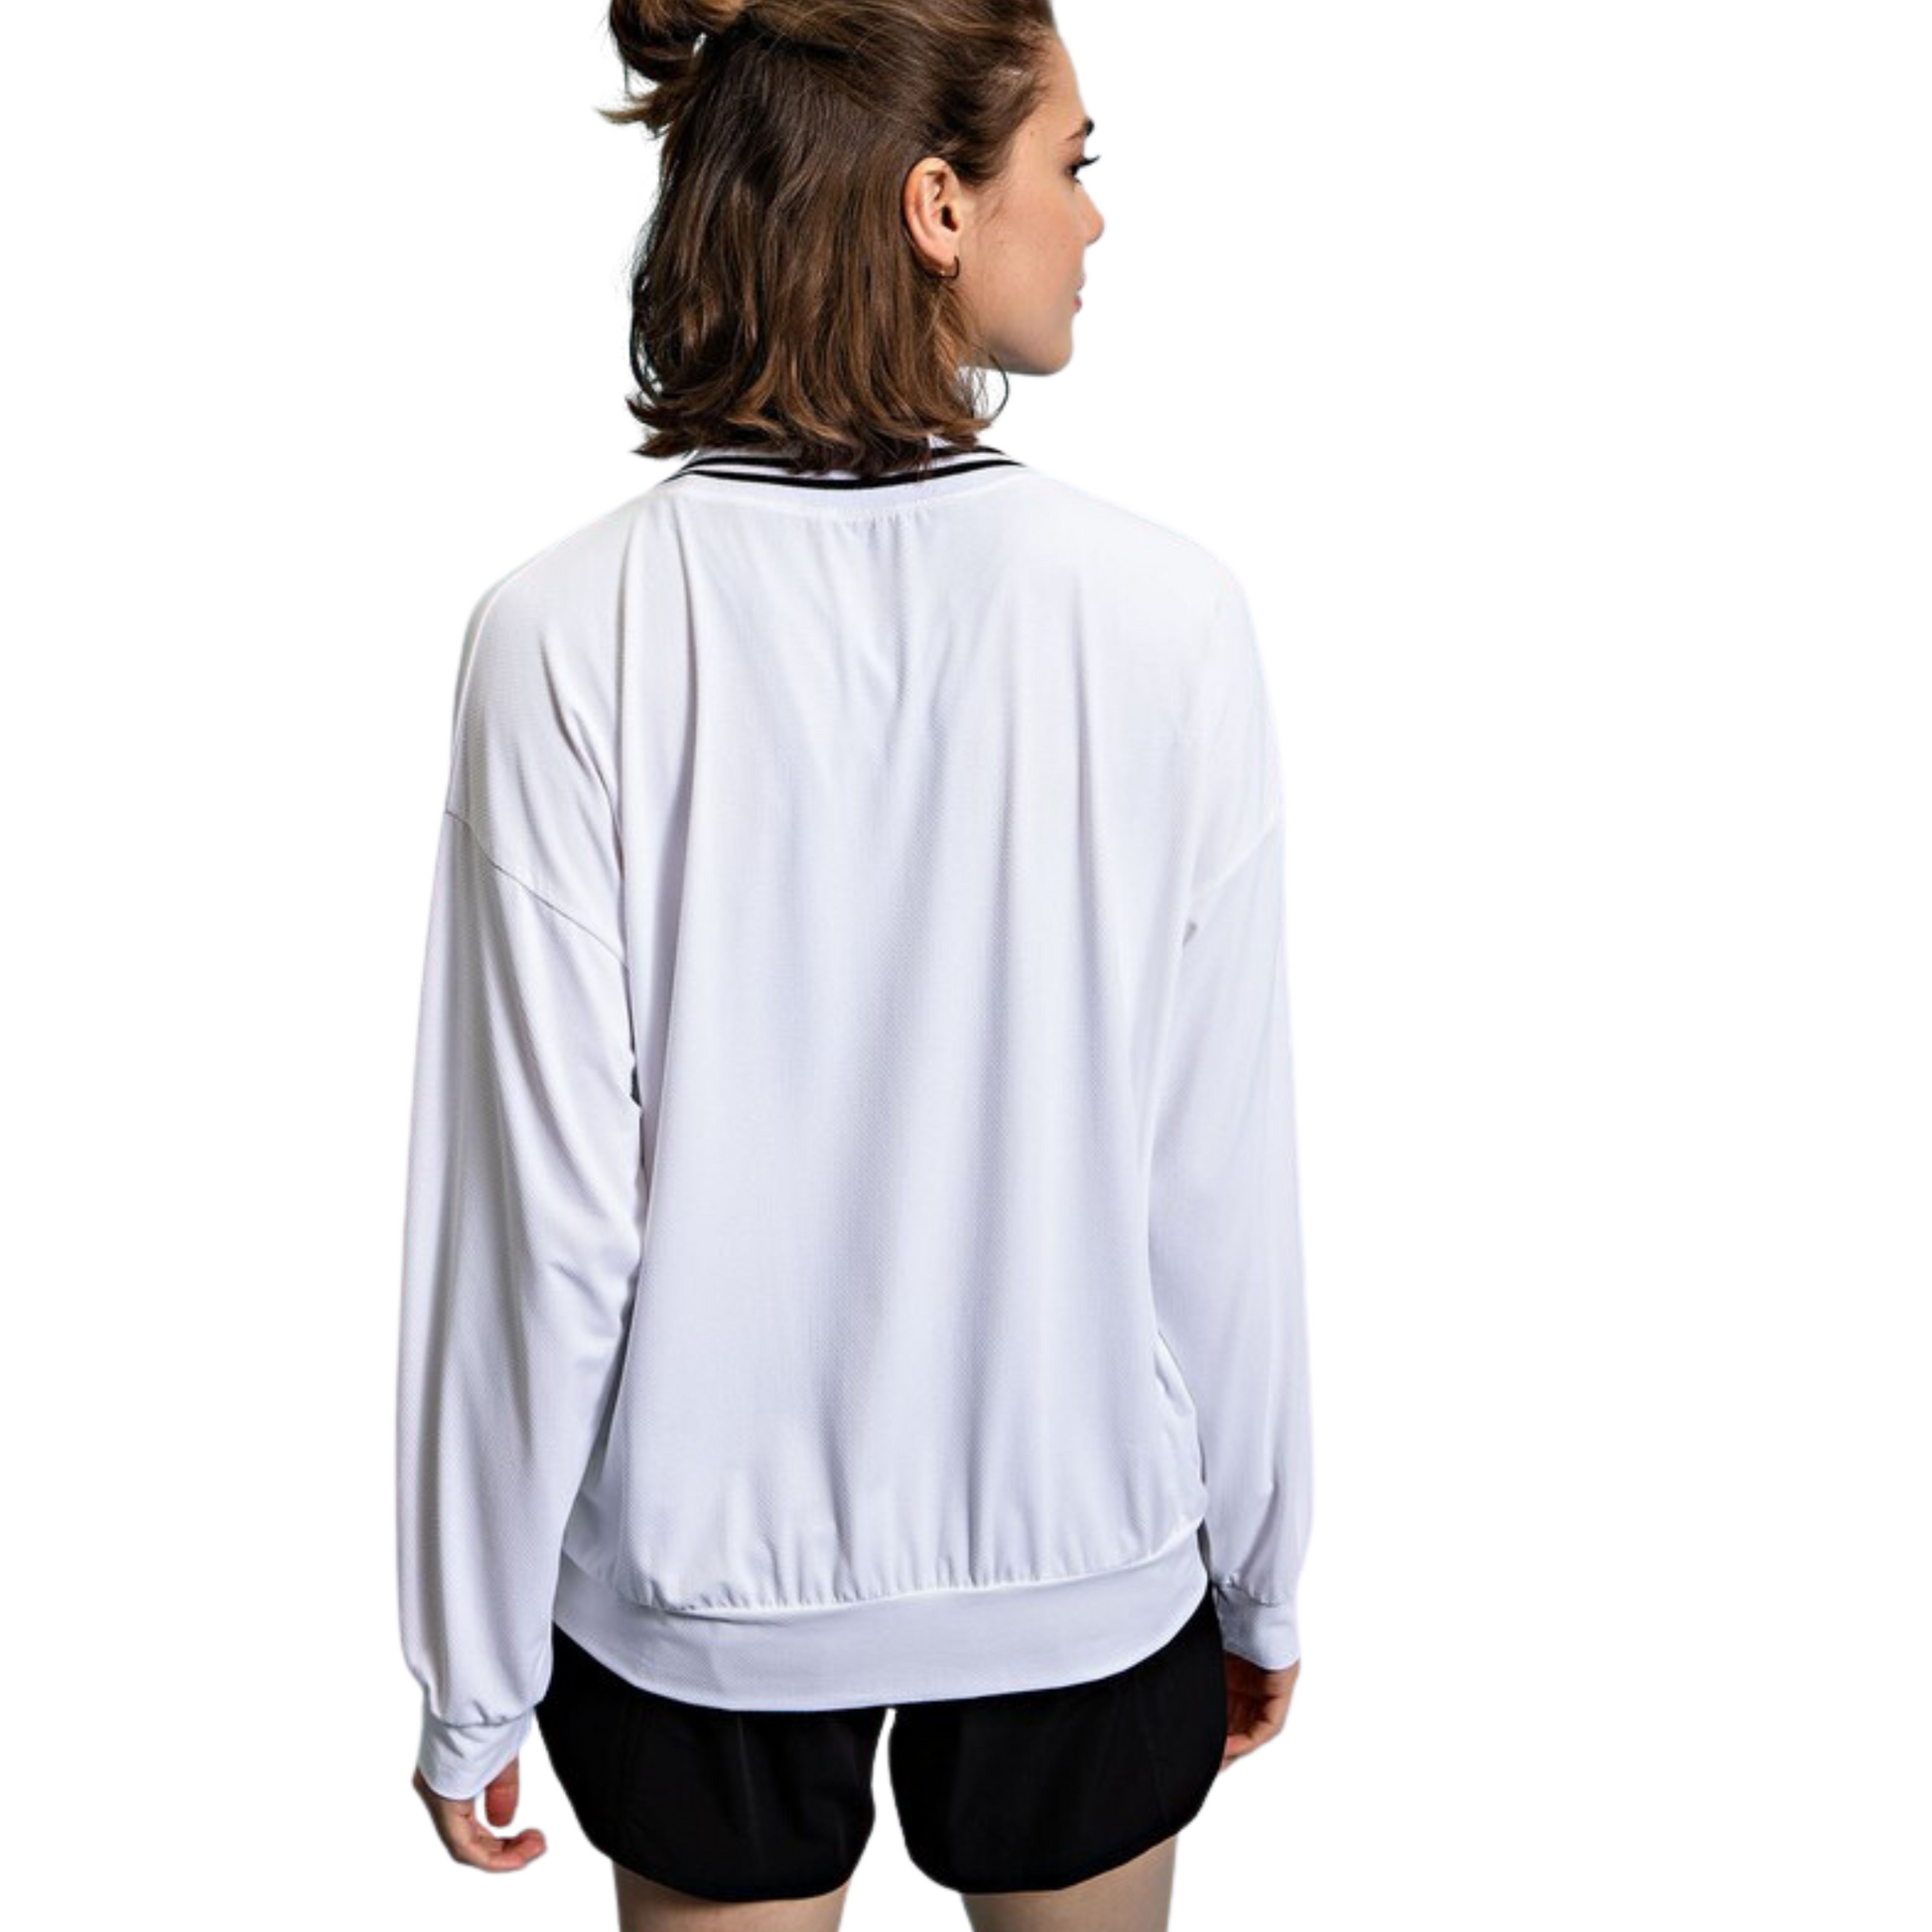 Lightweight v-neck sweatshirt in off white